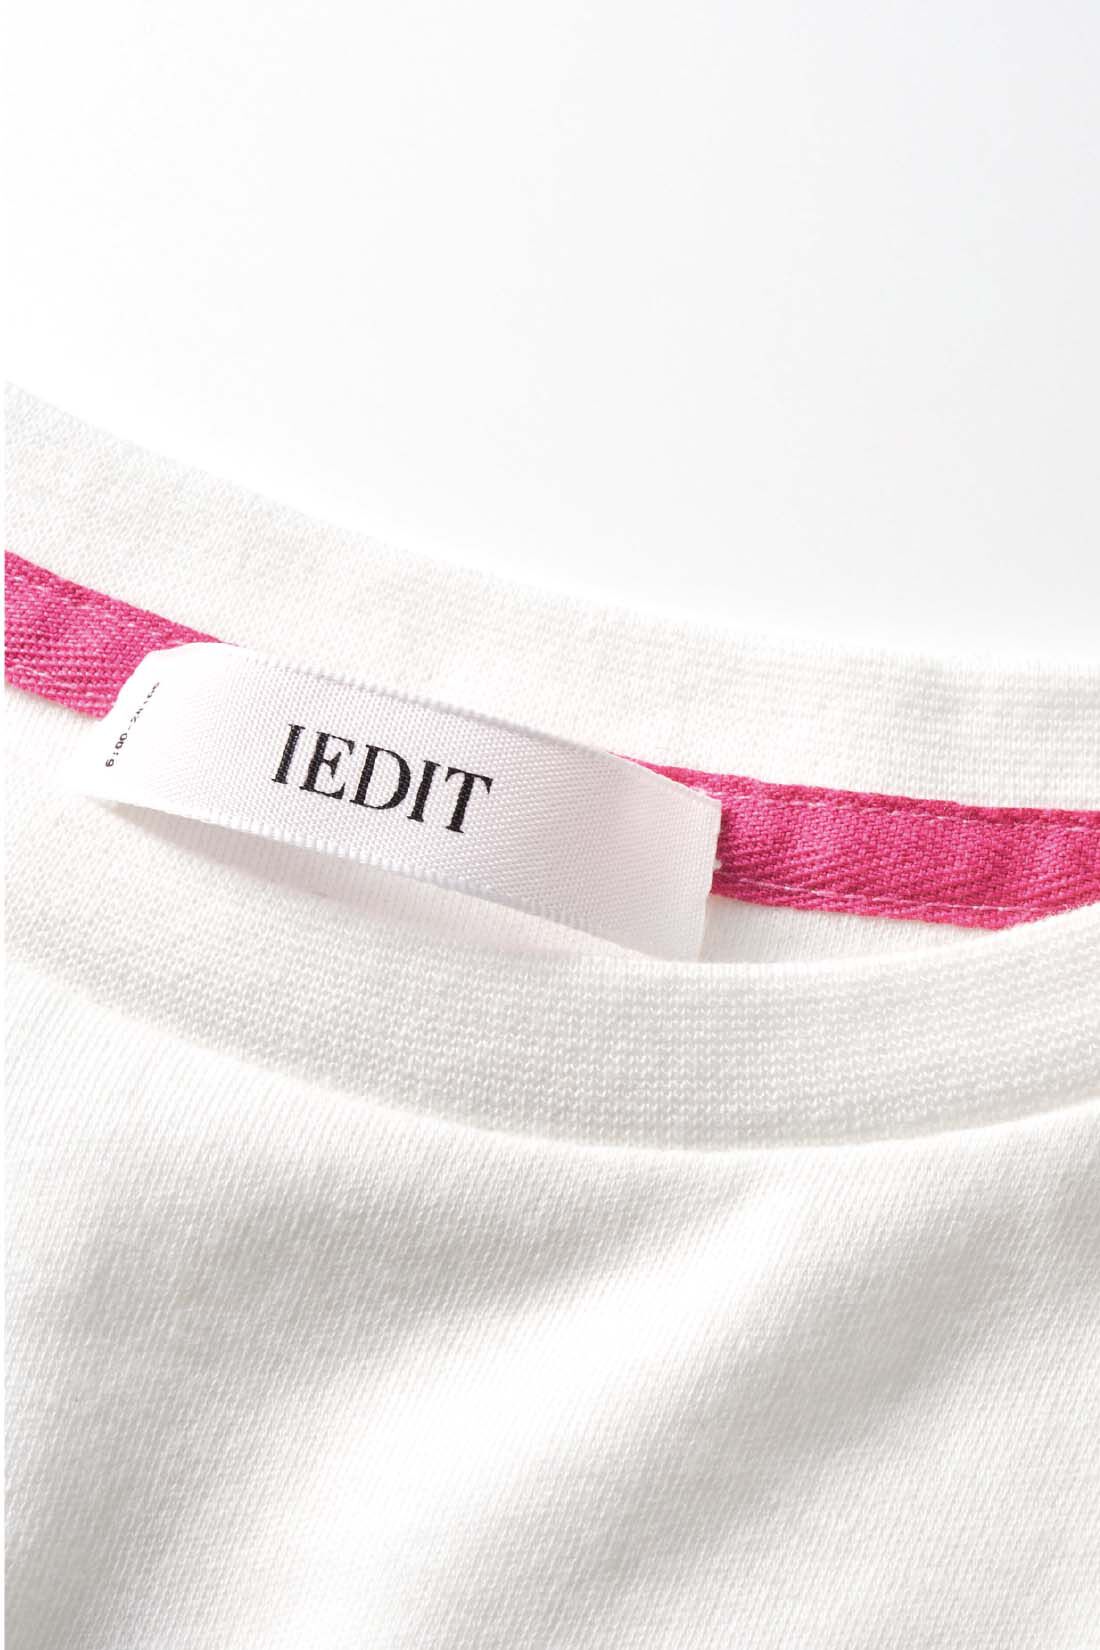 イディット|Live love cottonプロジェクト　IEDIT[イディット]　近代美術の創始者マネが描いたチャーミングなベルト・モリゾをあしらったパフスリーブアートTシャツ〈ホワイト〉|コラージュしたロゴに合わせてネック裏のテープもピンク色に。